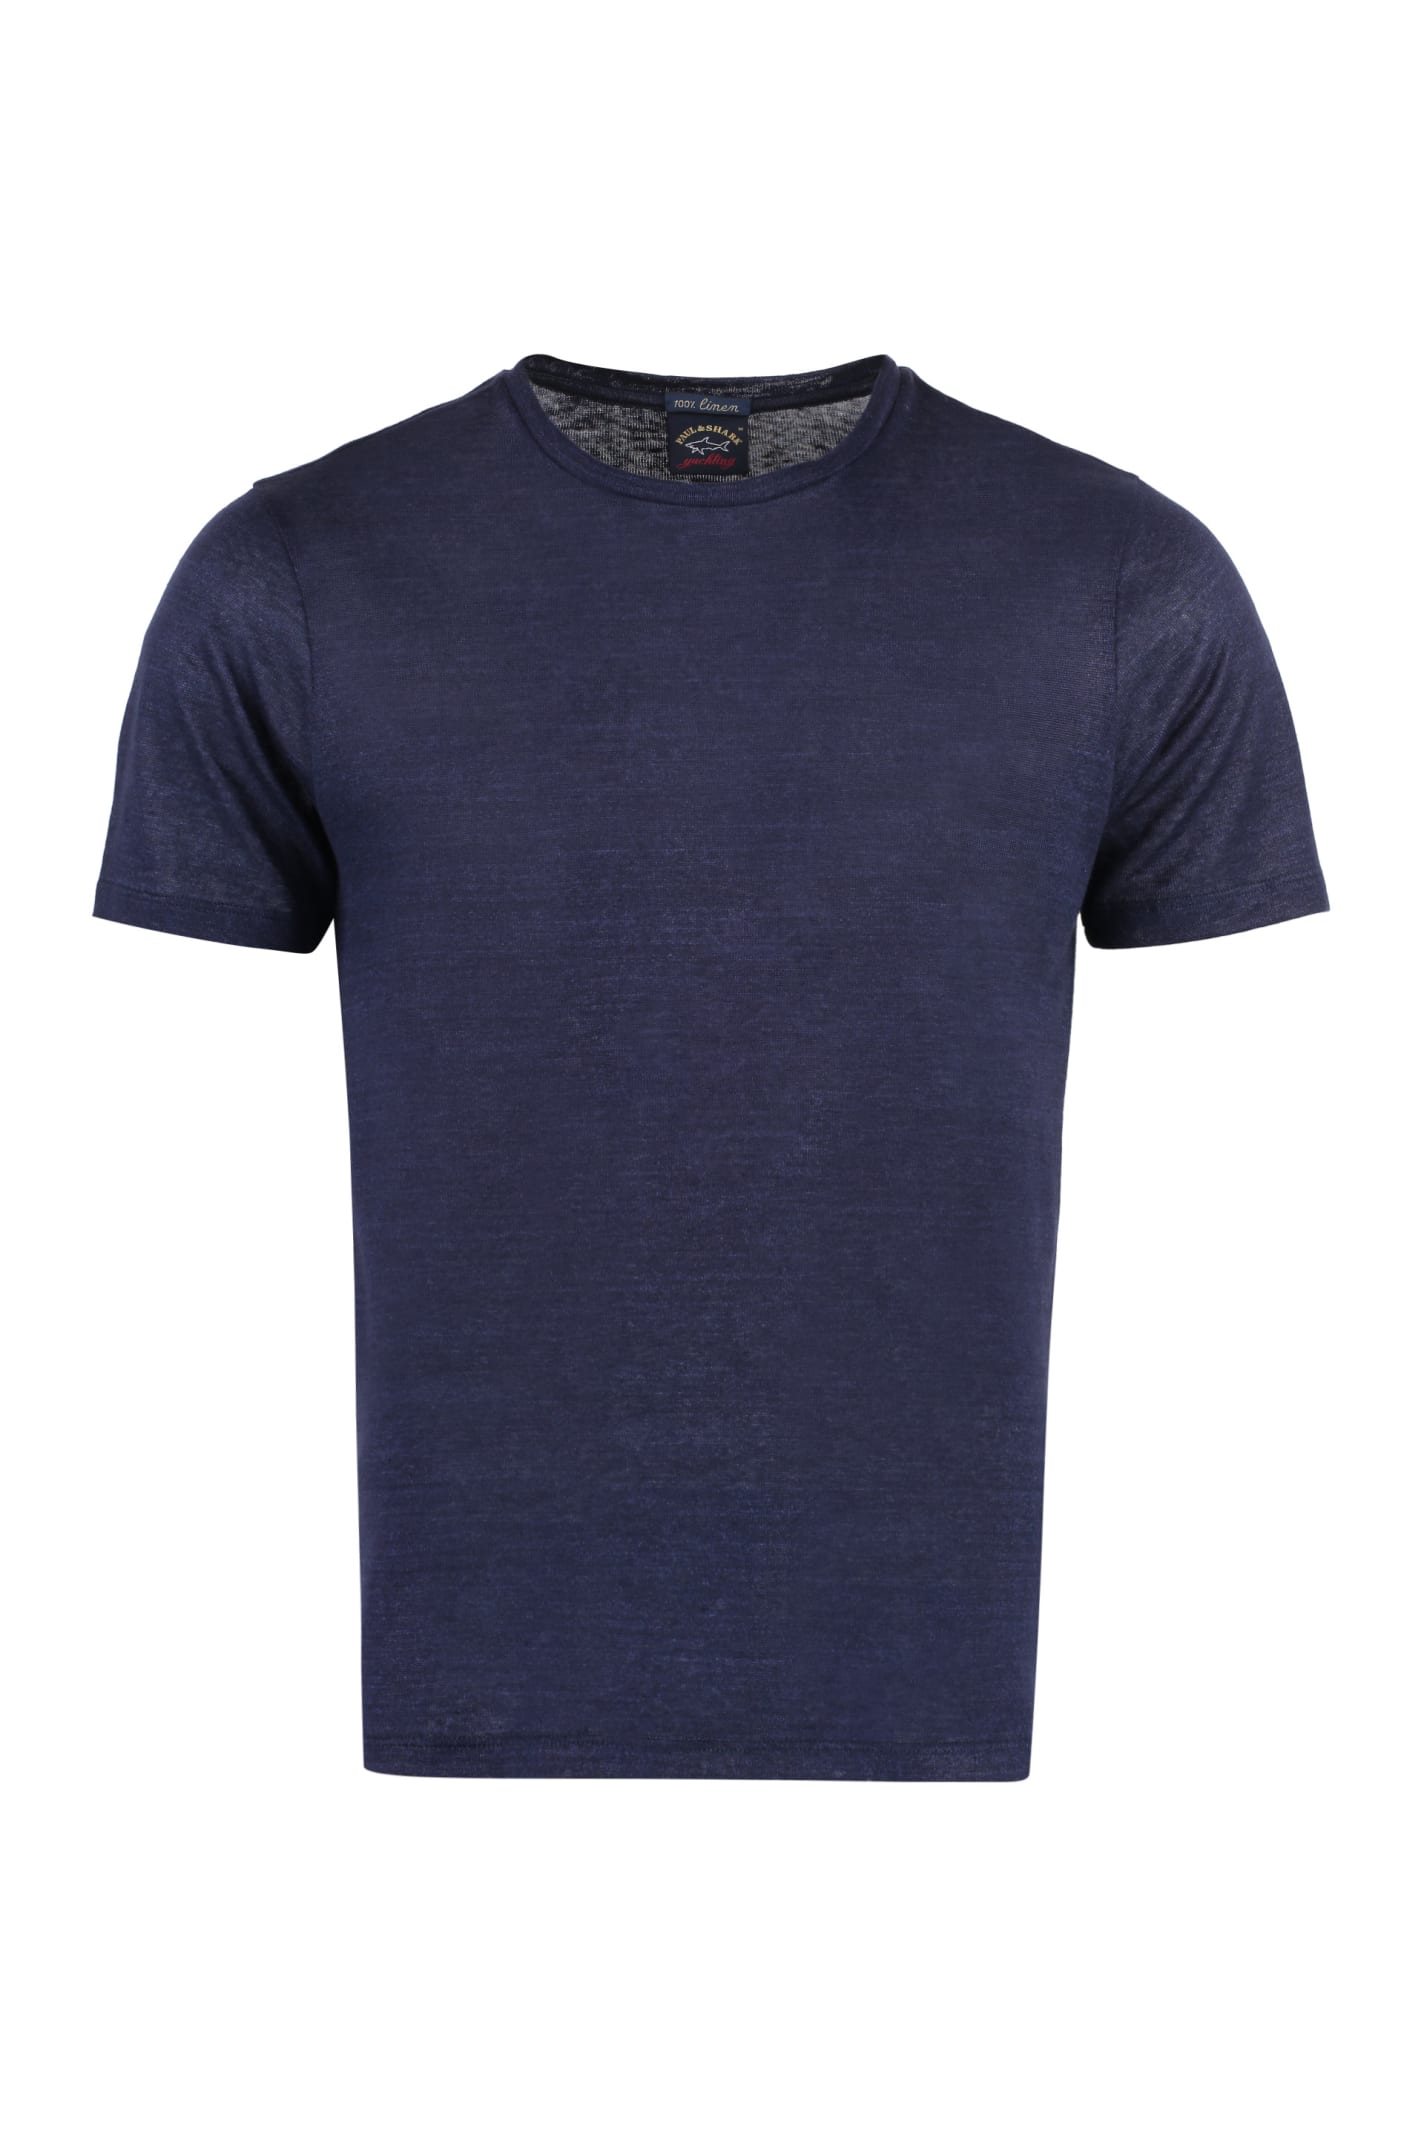 Paul&amp;shark Linen T-shirt In Blue